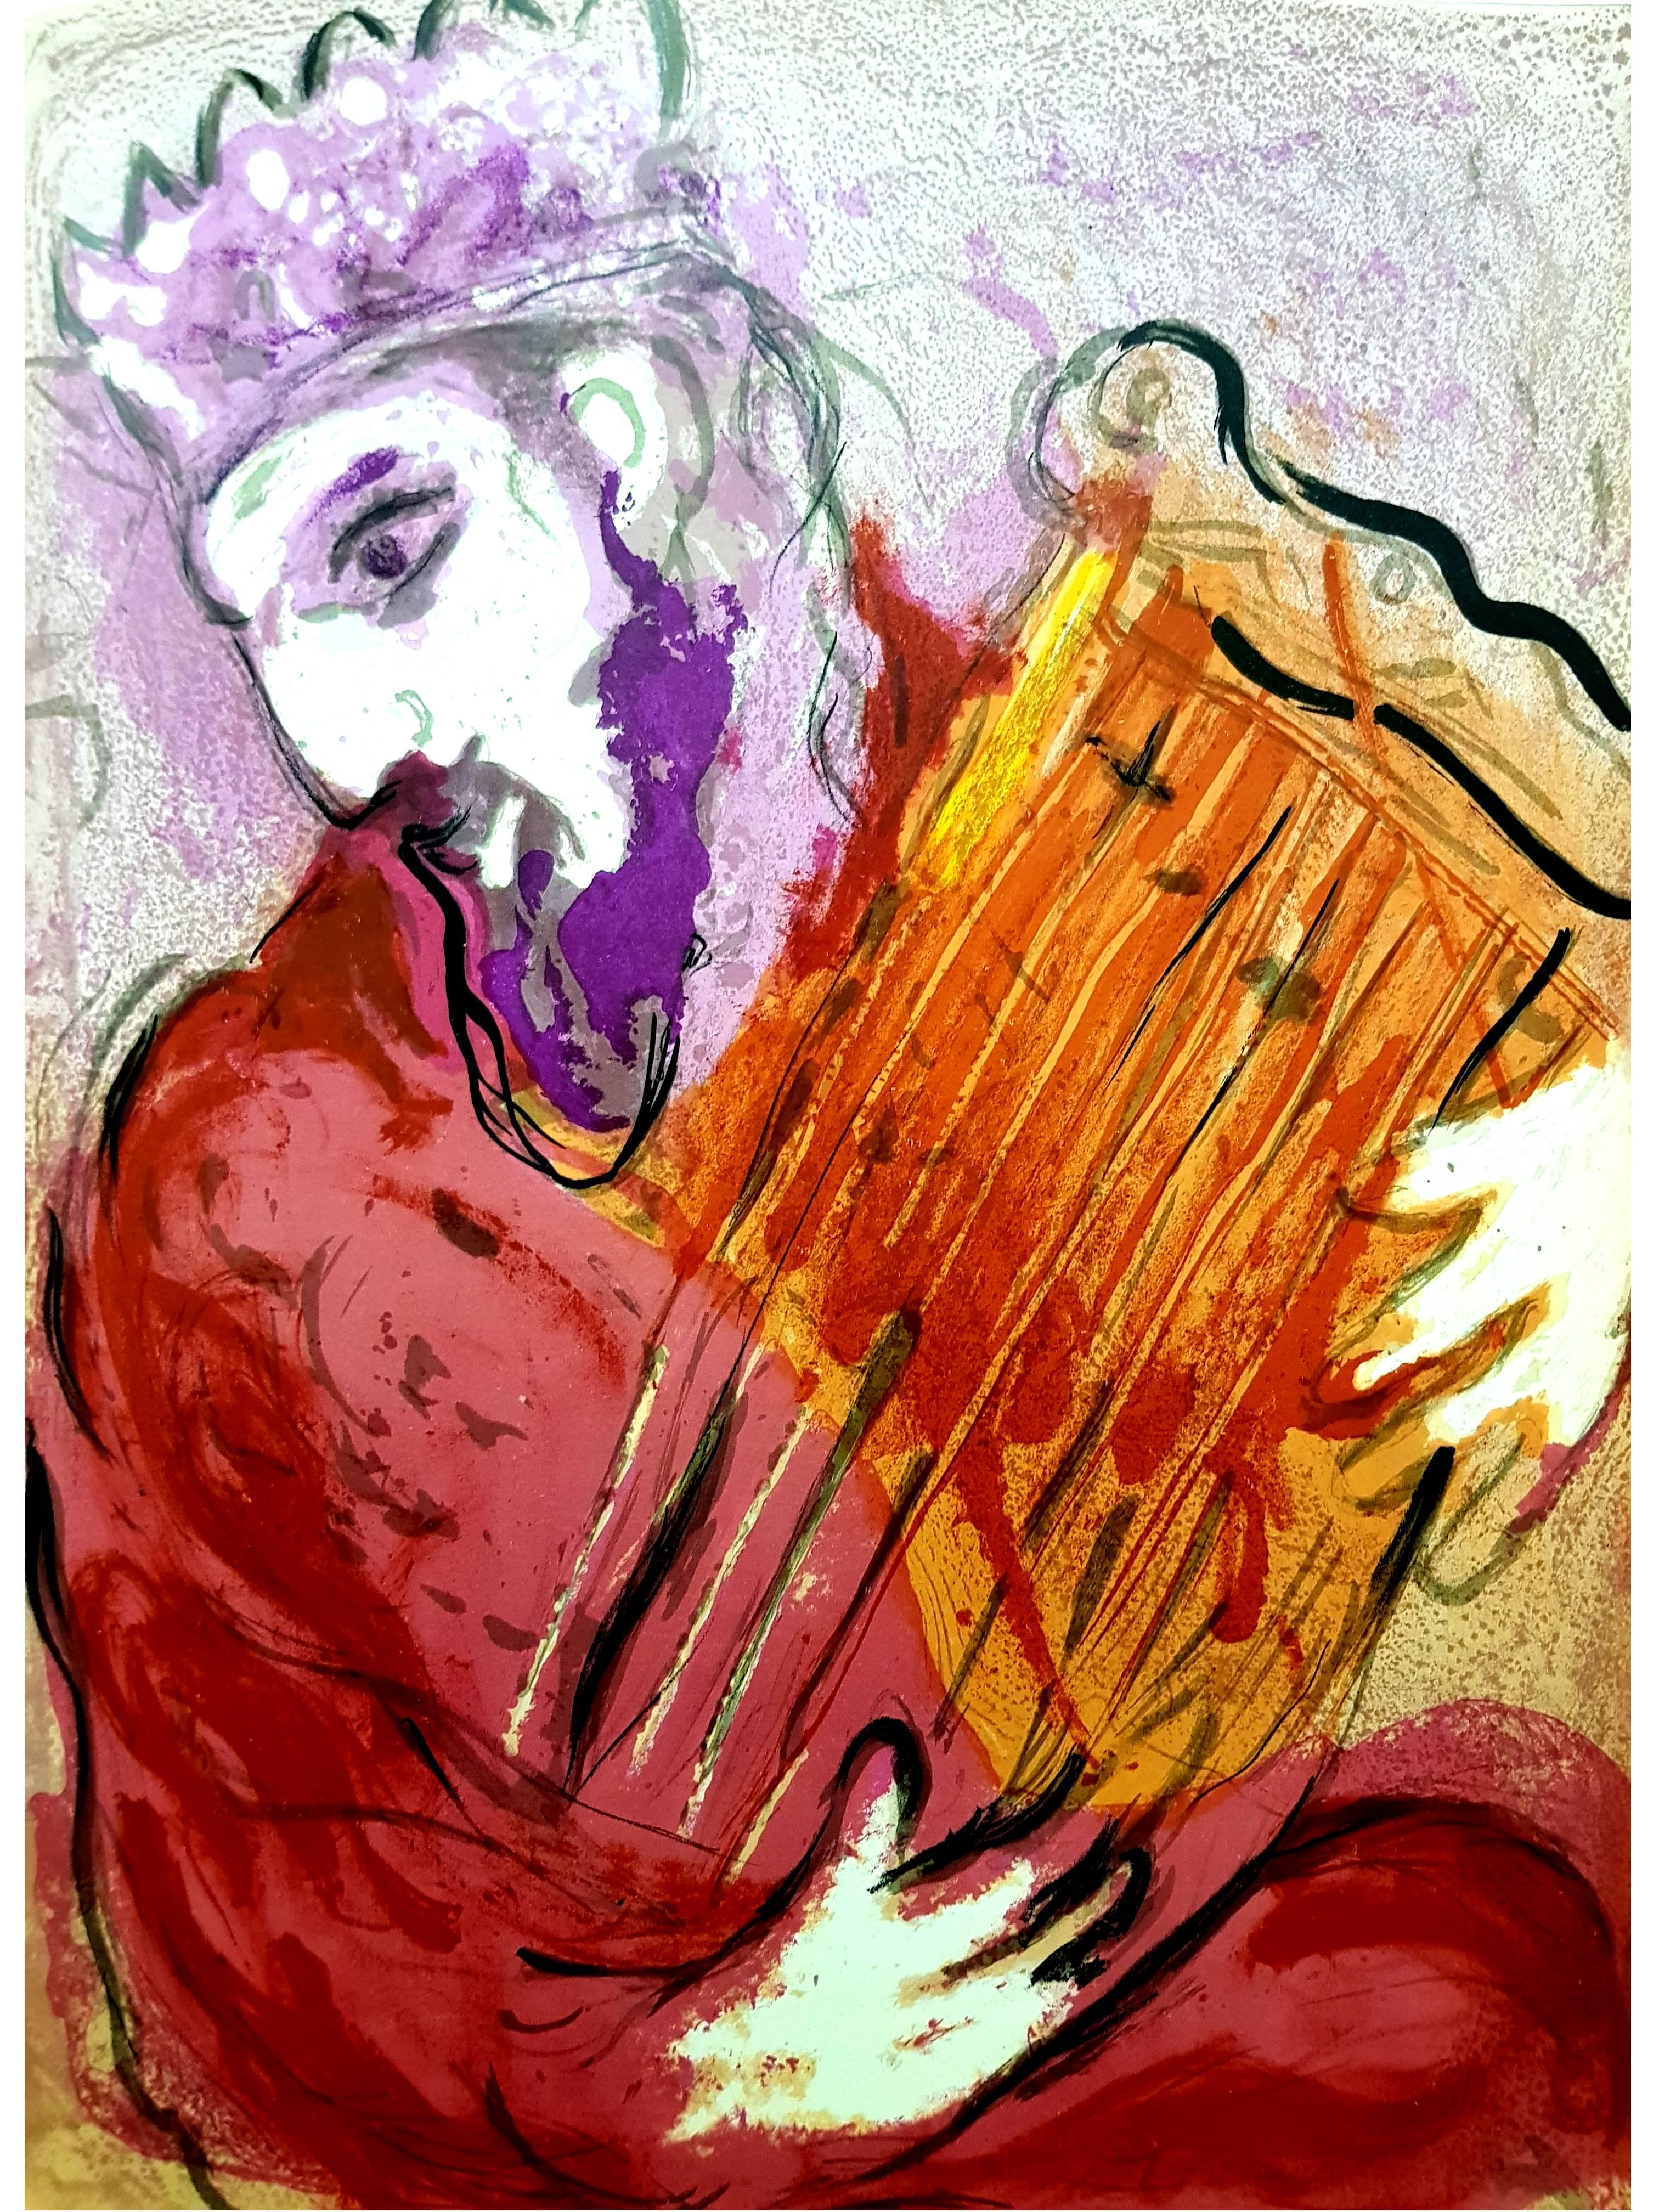 Marc Chagall, lithographie originale représentant un instant de la Bible.
Technique :	Lithographie originale en couleurs
Année :	1956
Tailles :	35,5 x 26 cm / 14" x 10.2" (feuille)
Publié par :	Éditions de la Revue Verve, Tériade, Paris
Imprimé par